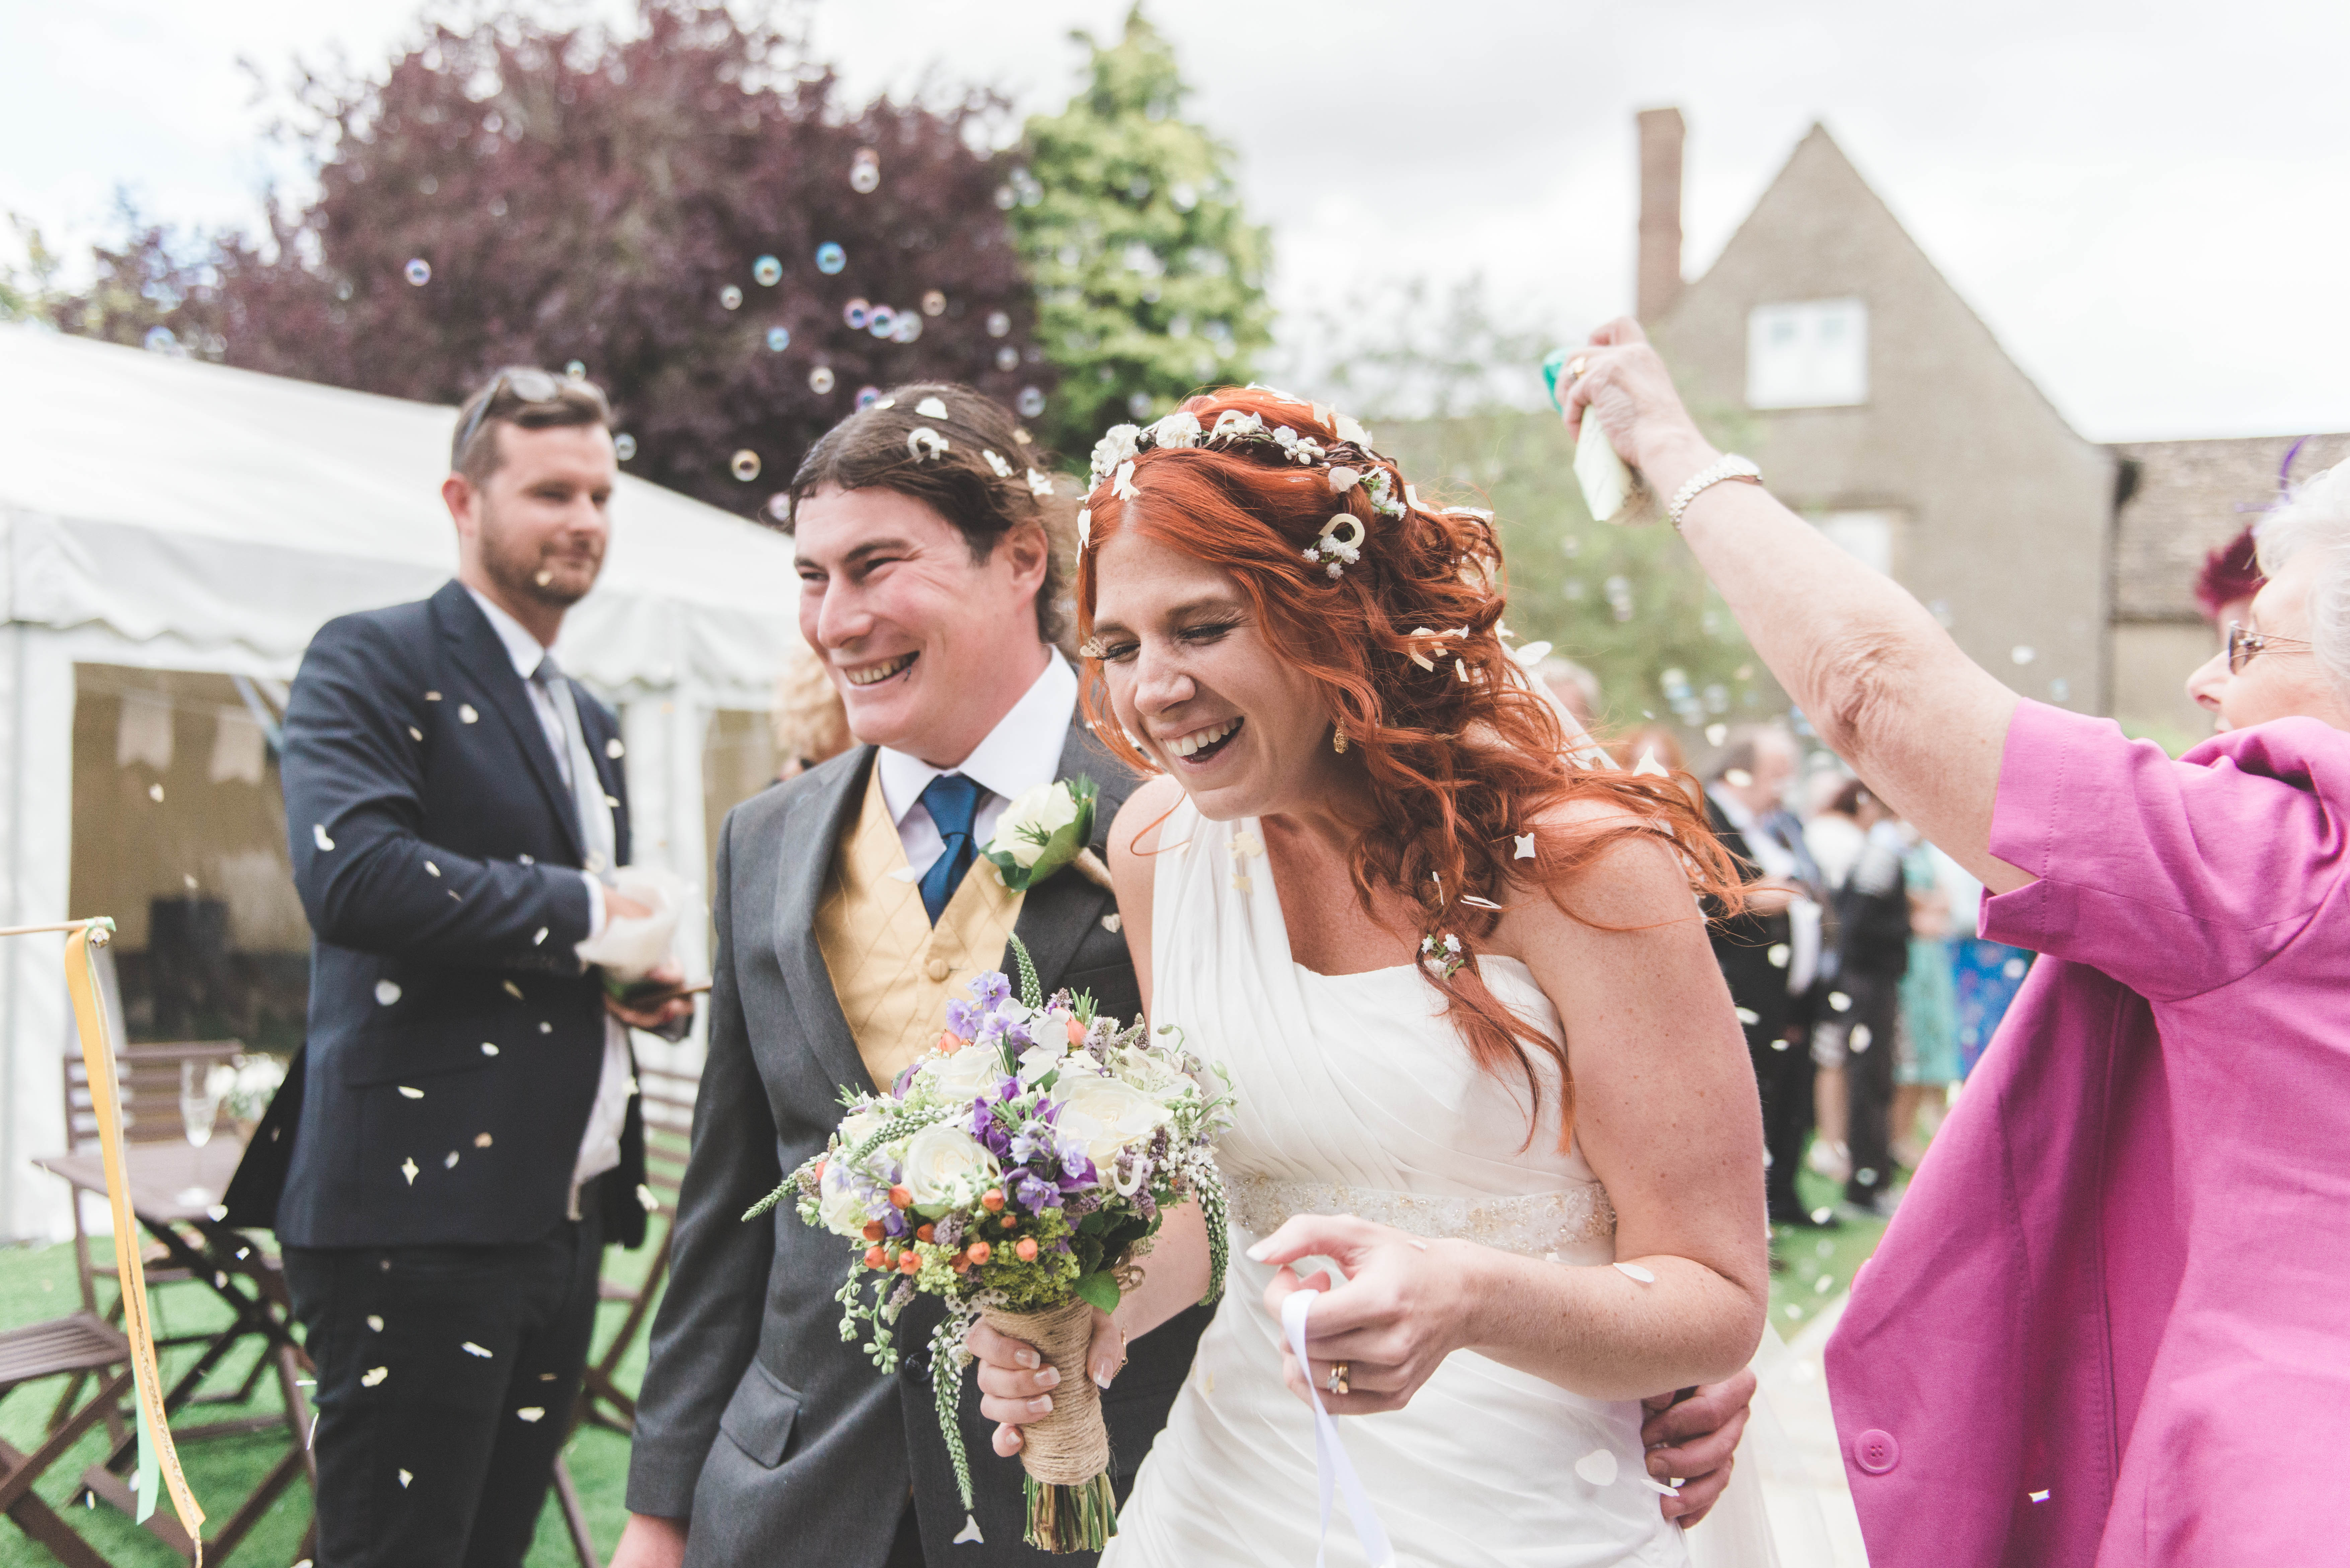 Stockholm trouwfotograaf - Bruid en bruidegom worden bedolven onder confetti tijdens hun bruiloft in Engeland